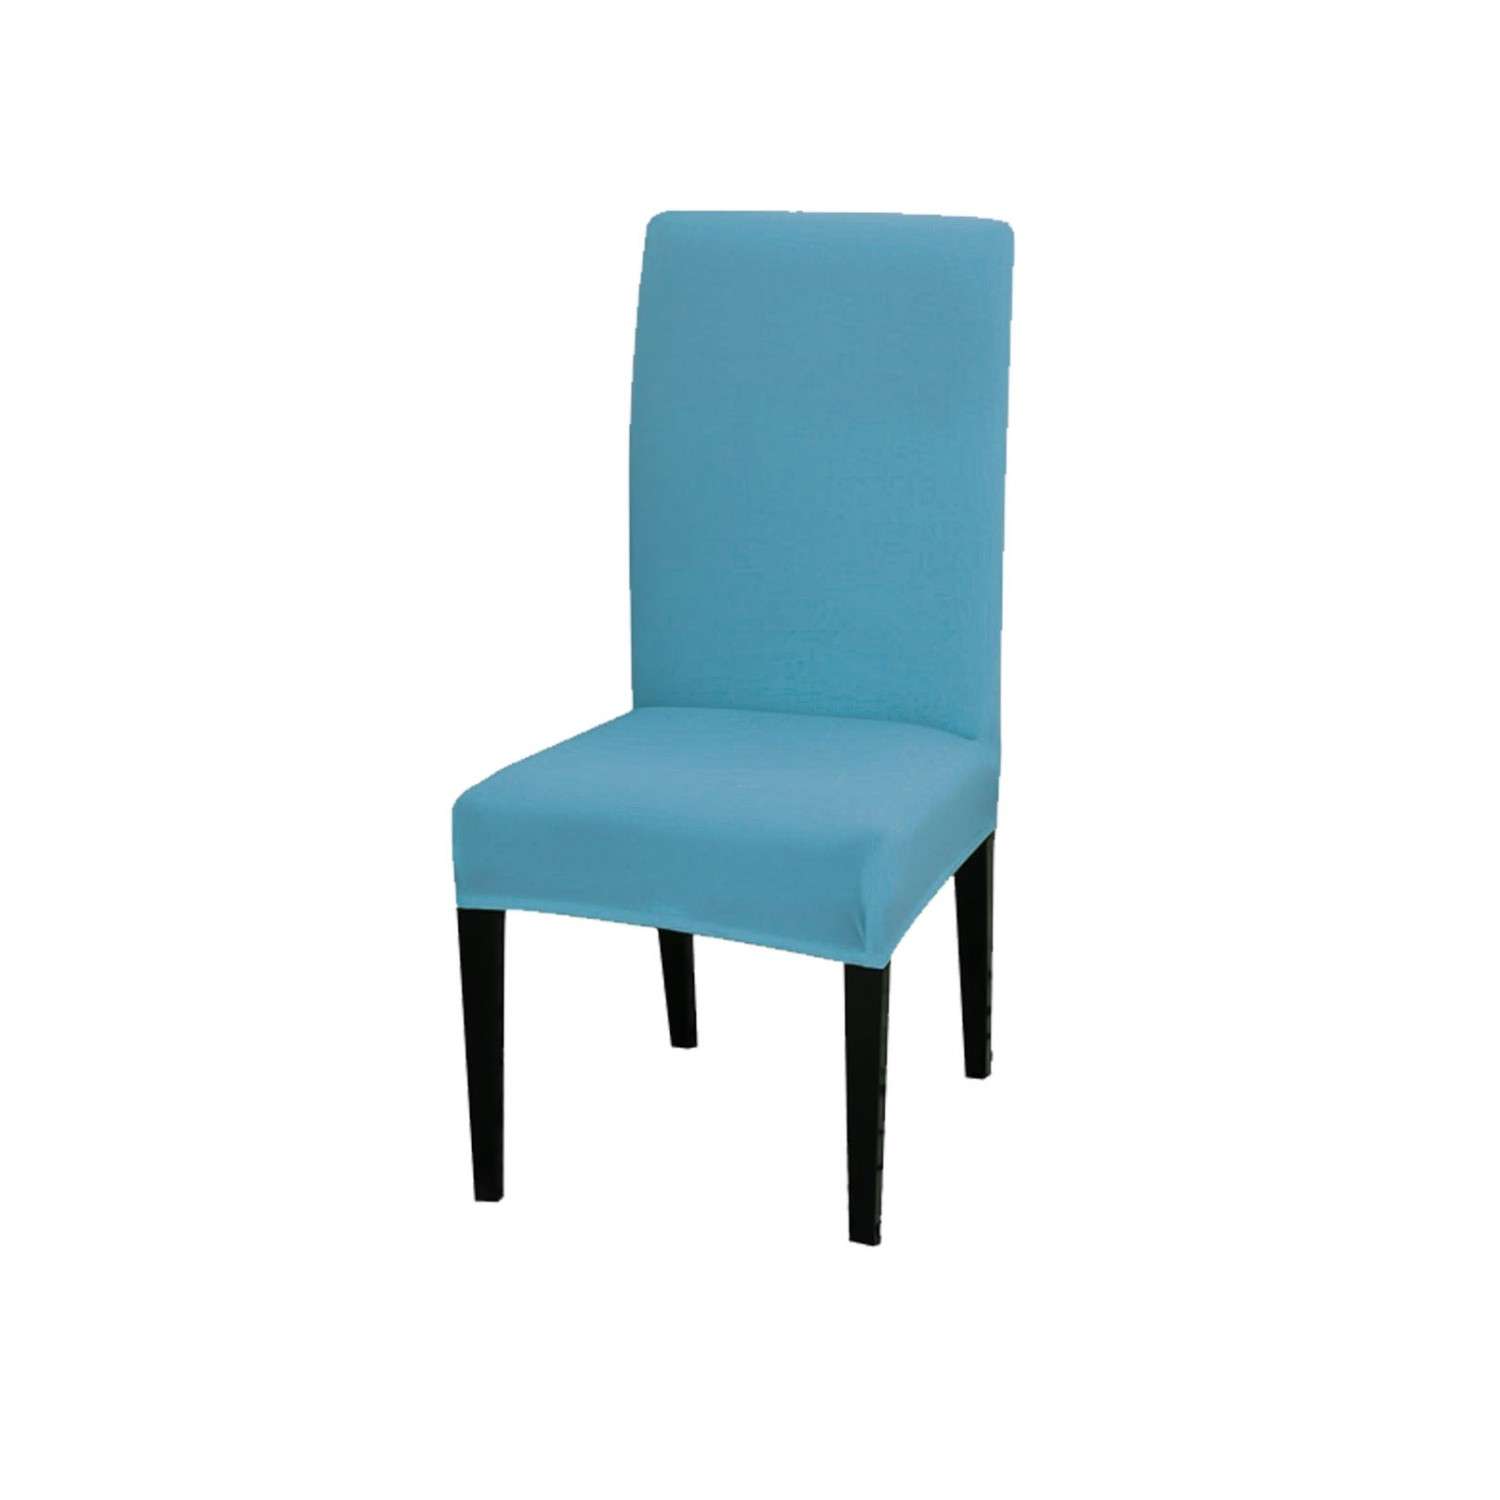 Чехол на стул LuxAlto Коллекция Jersey голубой - фото 1